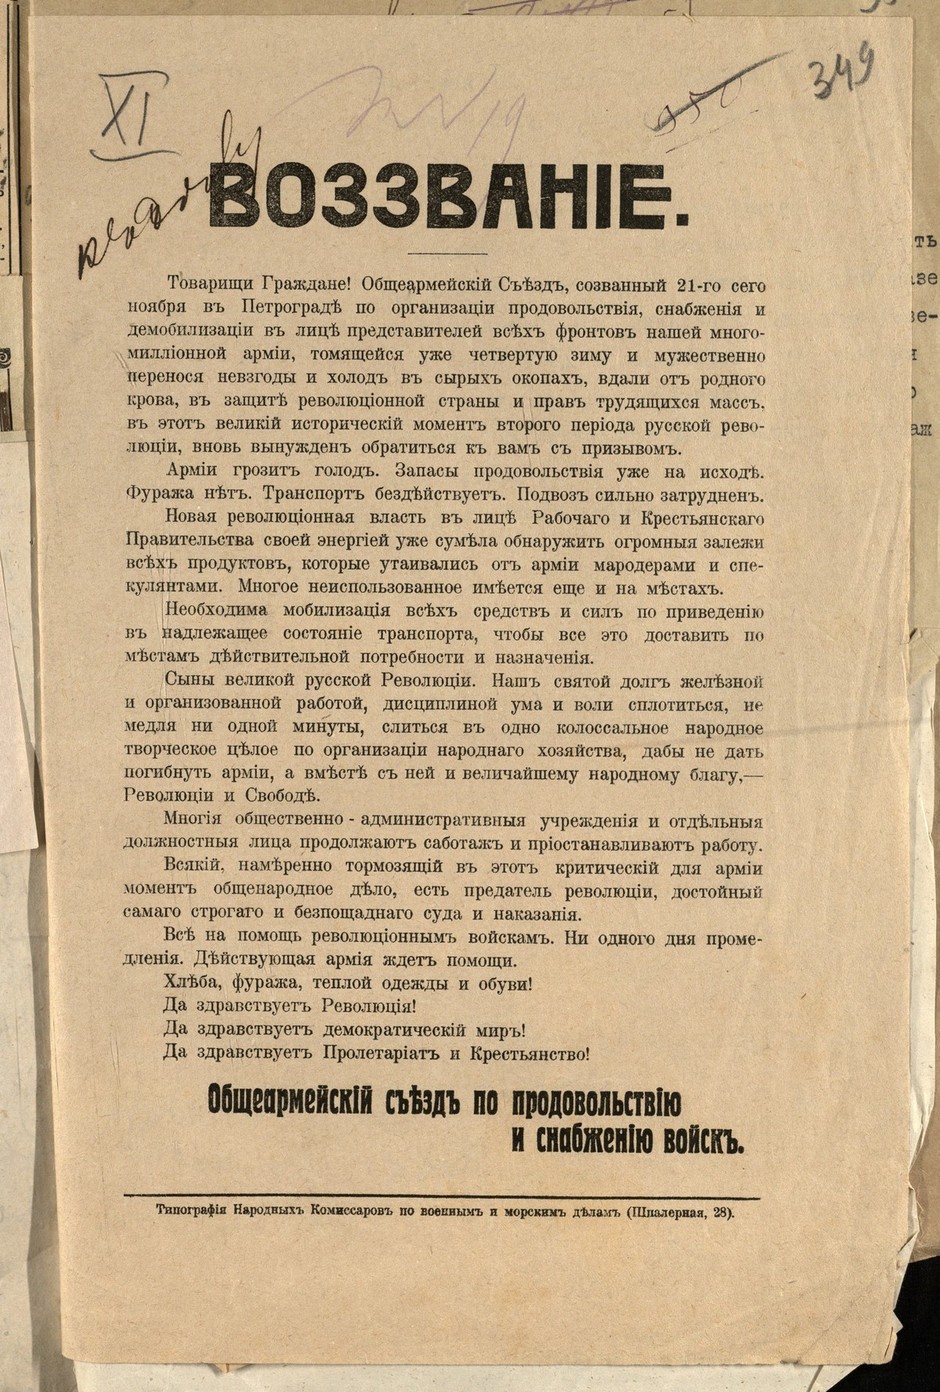 Воззвание Общеармейского съезда 21 ноября 1917 г. в Петрограде об организации продовольствия, снабжения и демобилизации о помощи армии продовольствием